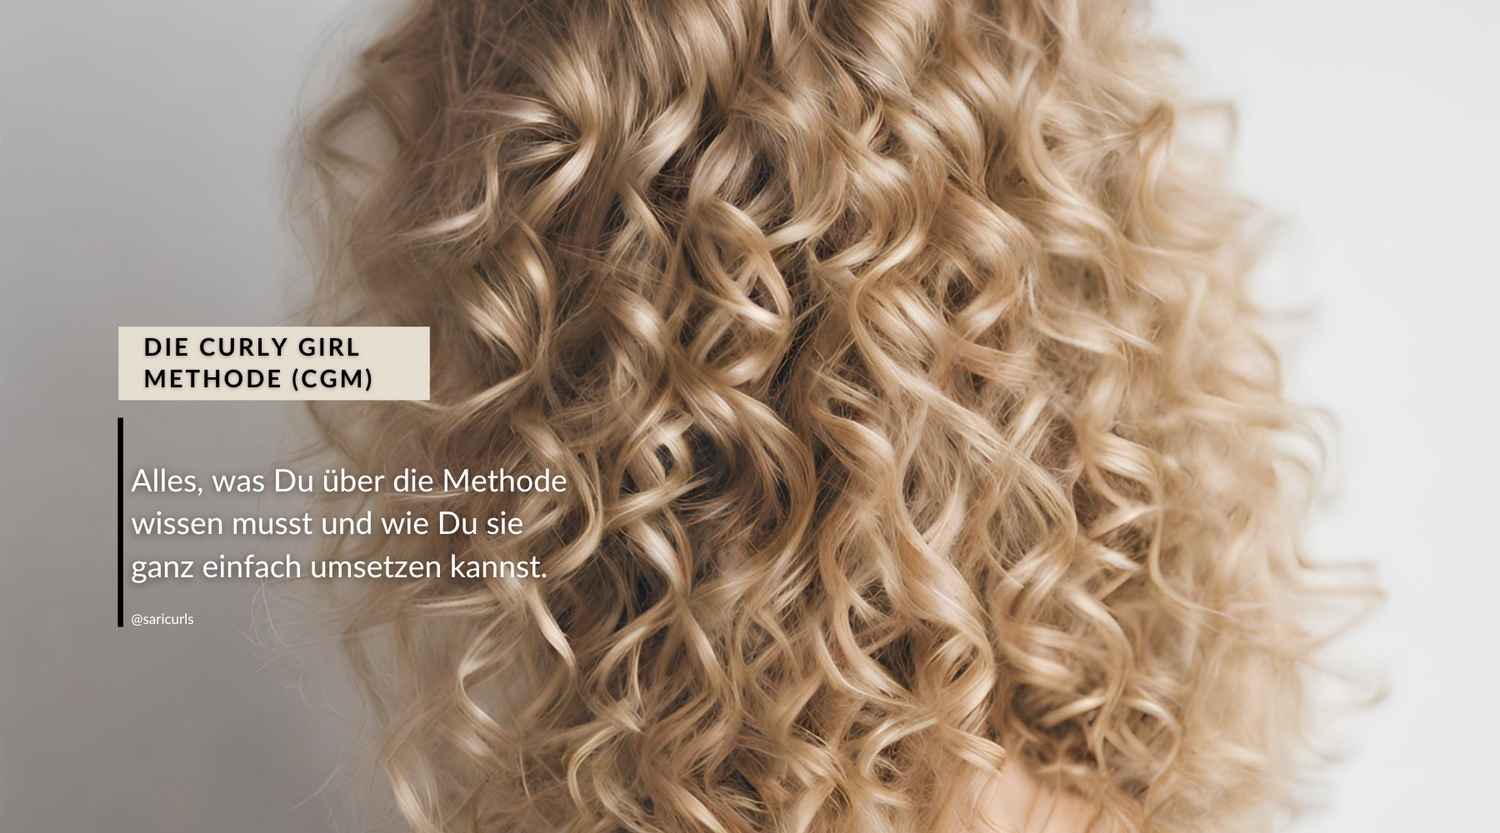 Alles was du über die Curly Hair Methode, auch bekannt als Curly Girl Methode, wissen musst für Deine Lockenpflege